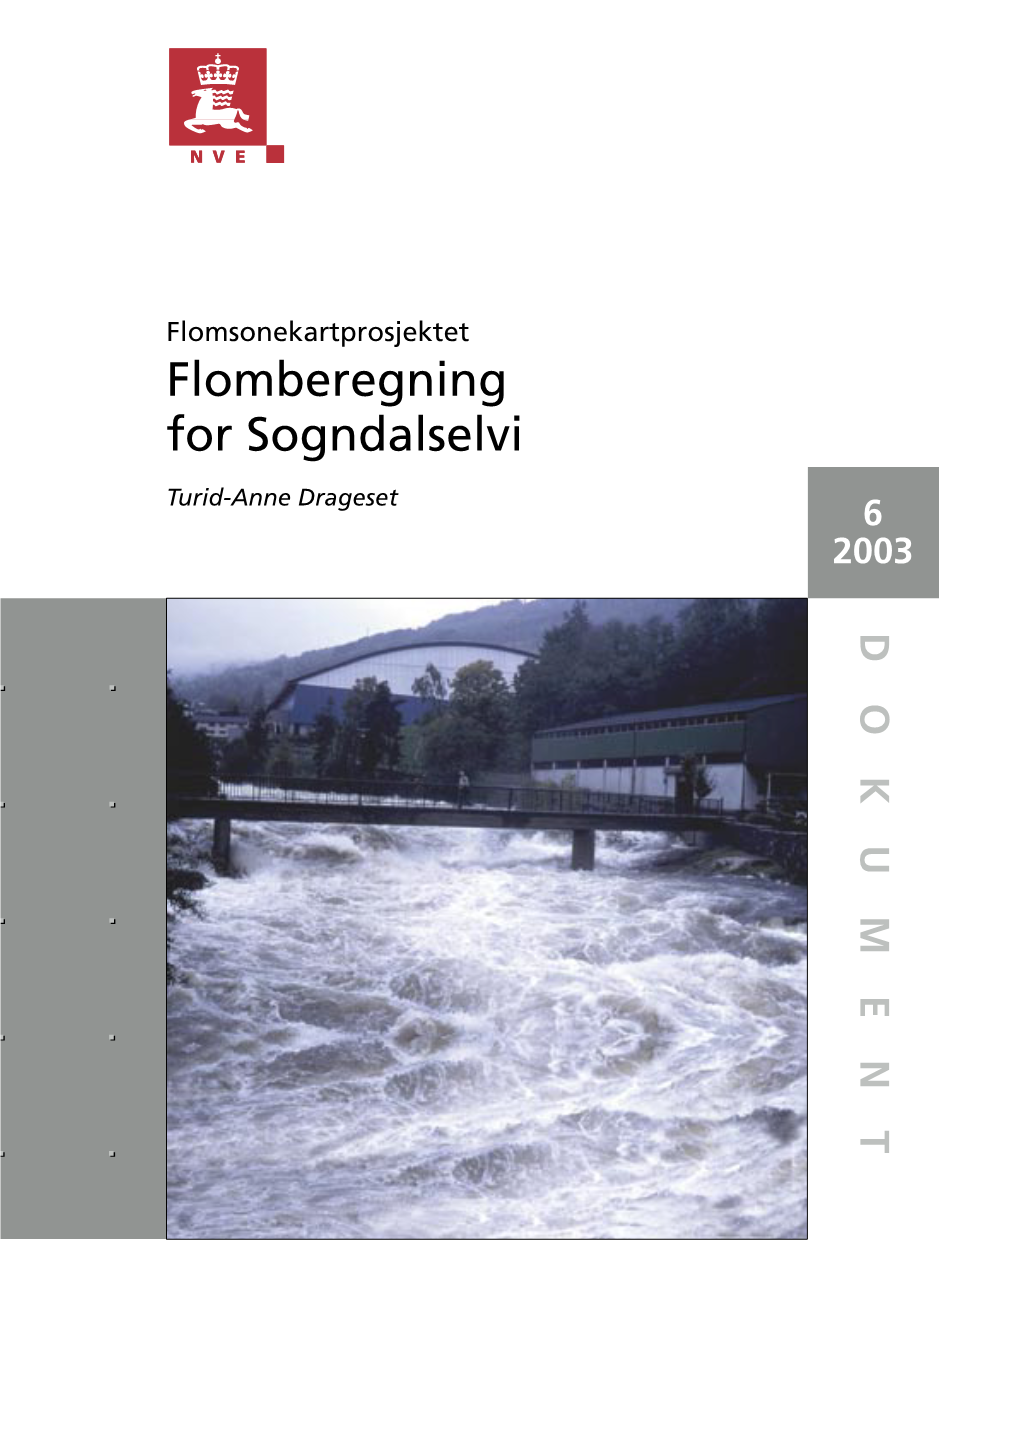 Flomberegning for Sogndalselvi (077.3Z) Flomsonekartprosjektet